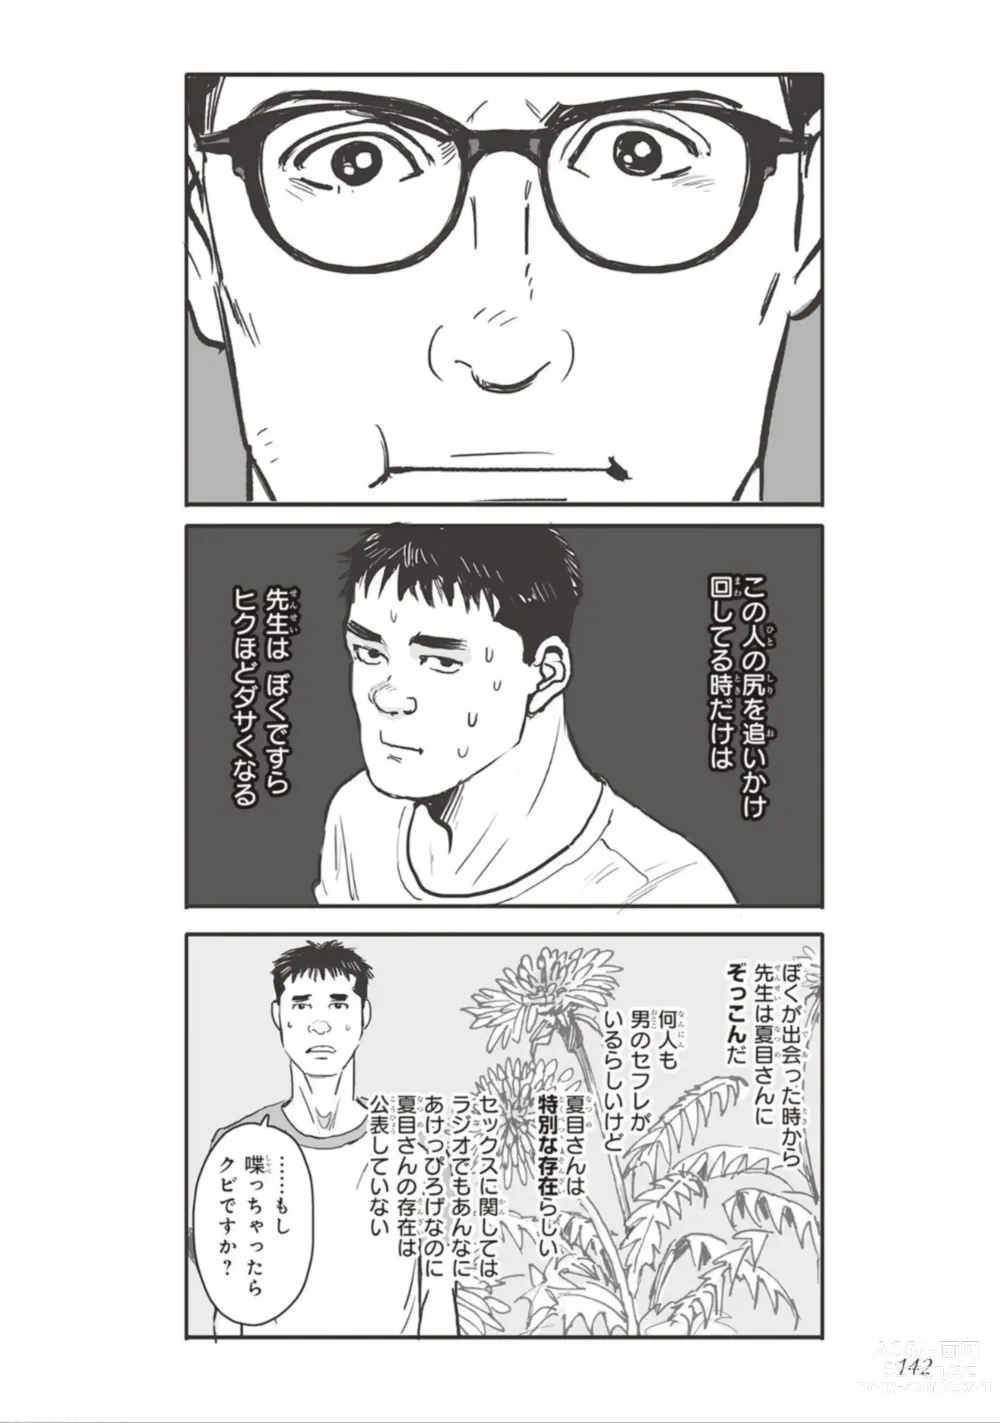 Page 144 of manga Bara to Tanpopo - Rose & Dandelion Jou